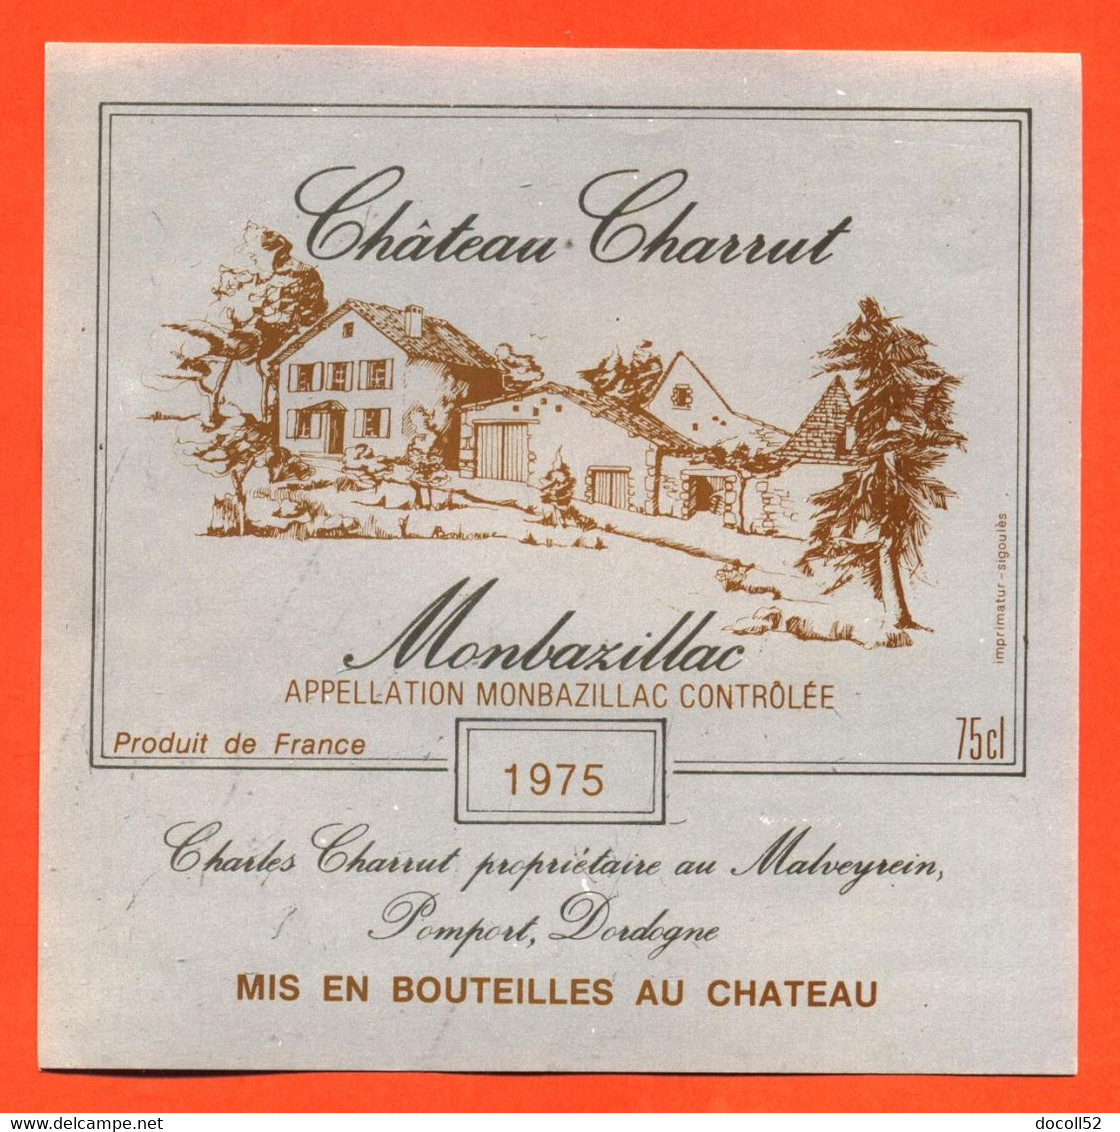 Etiquette Neuve De Vin Monbazillac Chateau Charrut 1975 Charles Charrut à Malveyrein - 75 Cl - Monbazillac